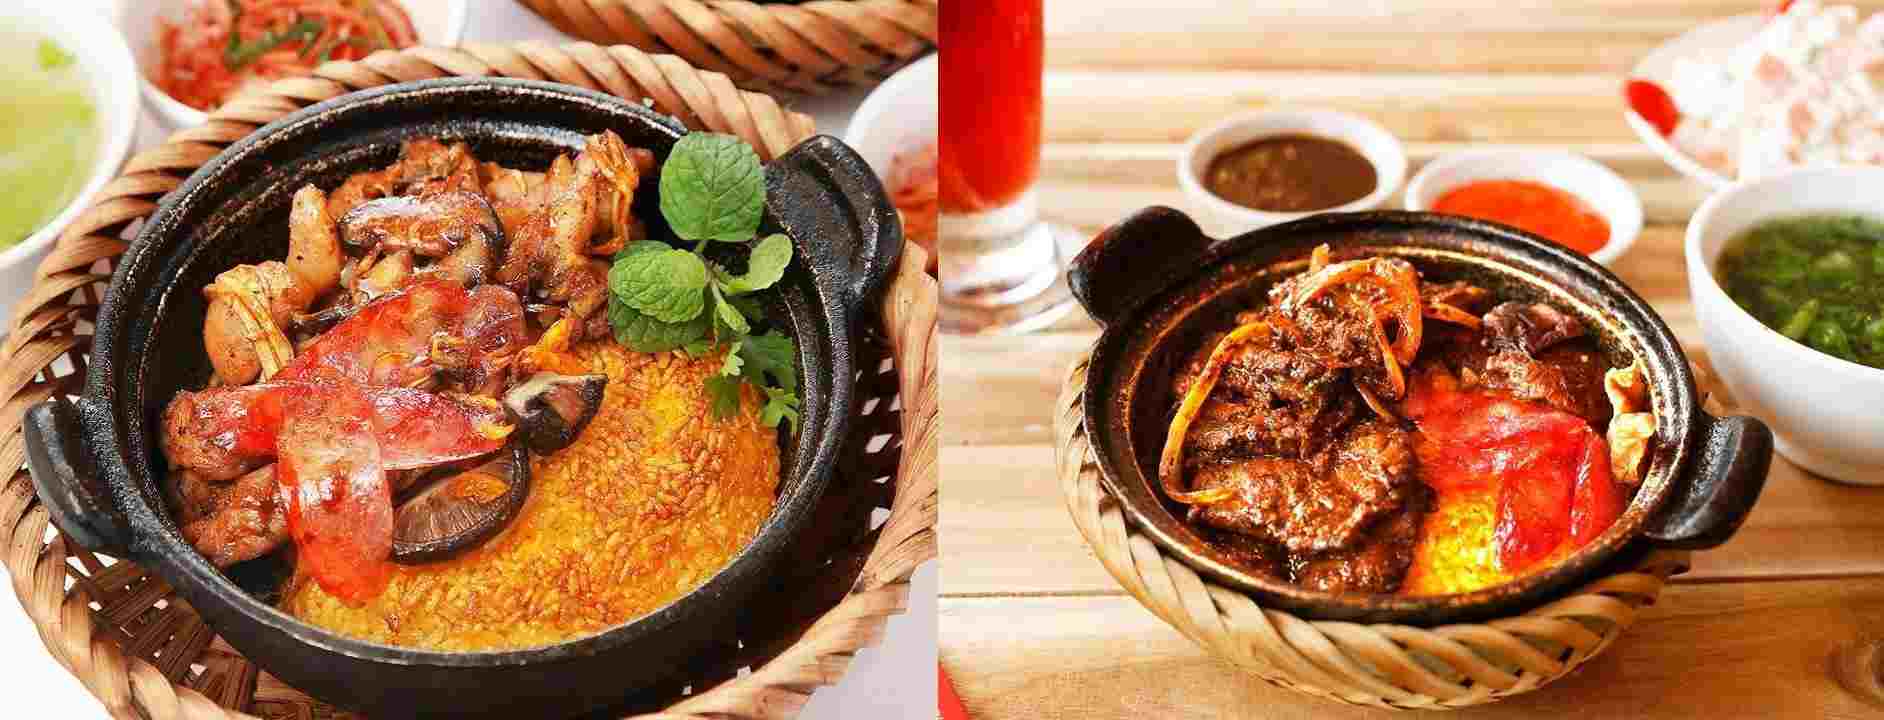 Cơm Niêu Cua Singapore - Mely Food - Triptrip.info - Plan Tour cho người đi du lịch đầy đủ nhất